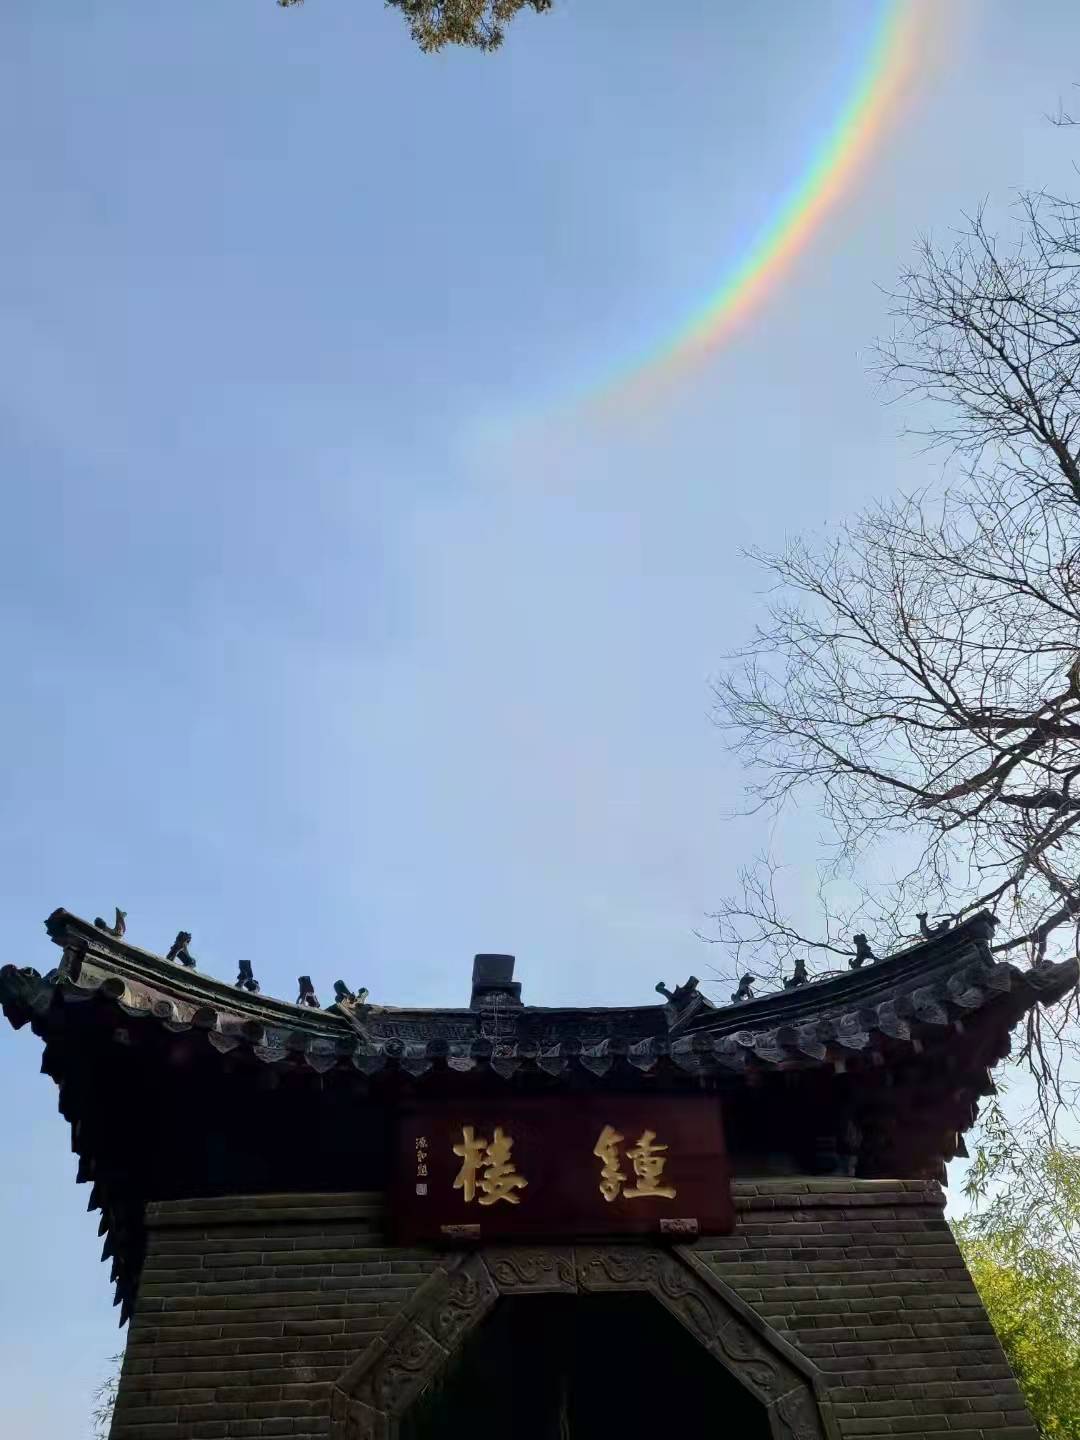 Natural phenomenon spotted near Puzhao Temple